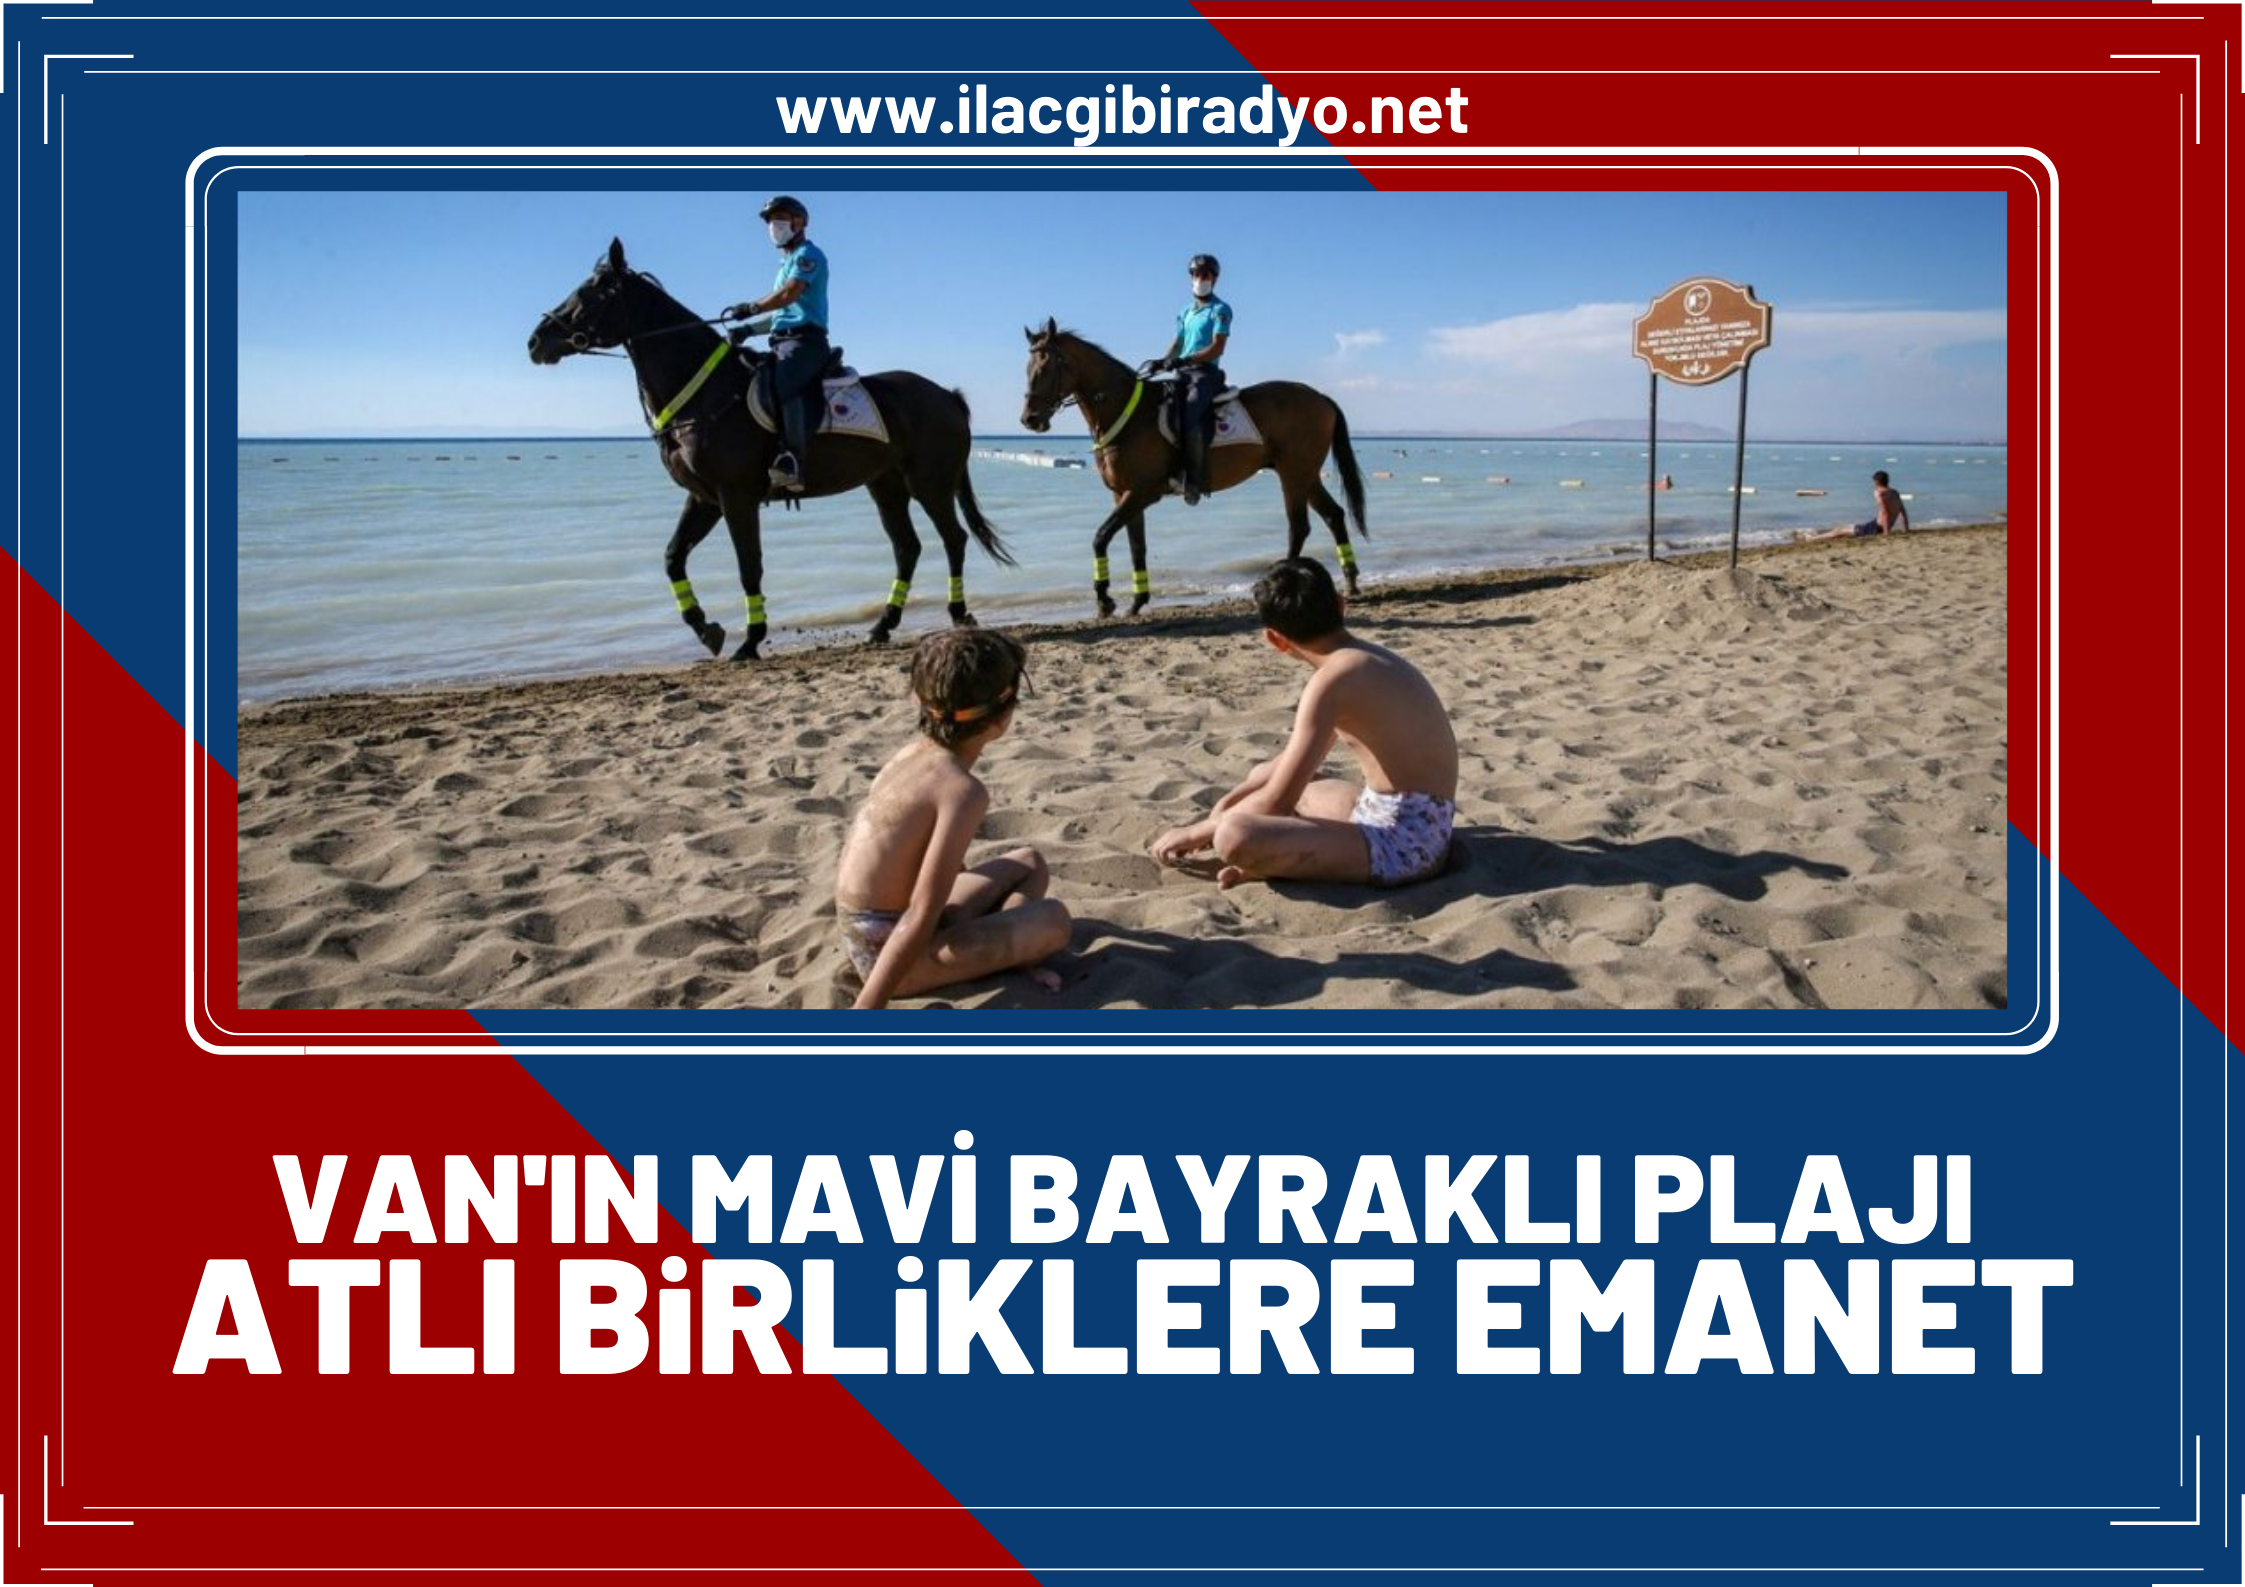 Türkiye’nin ilk ve tek Mavi Bayraklı halk plajı atlı birliklere emanet!